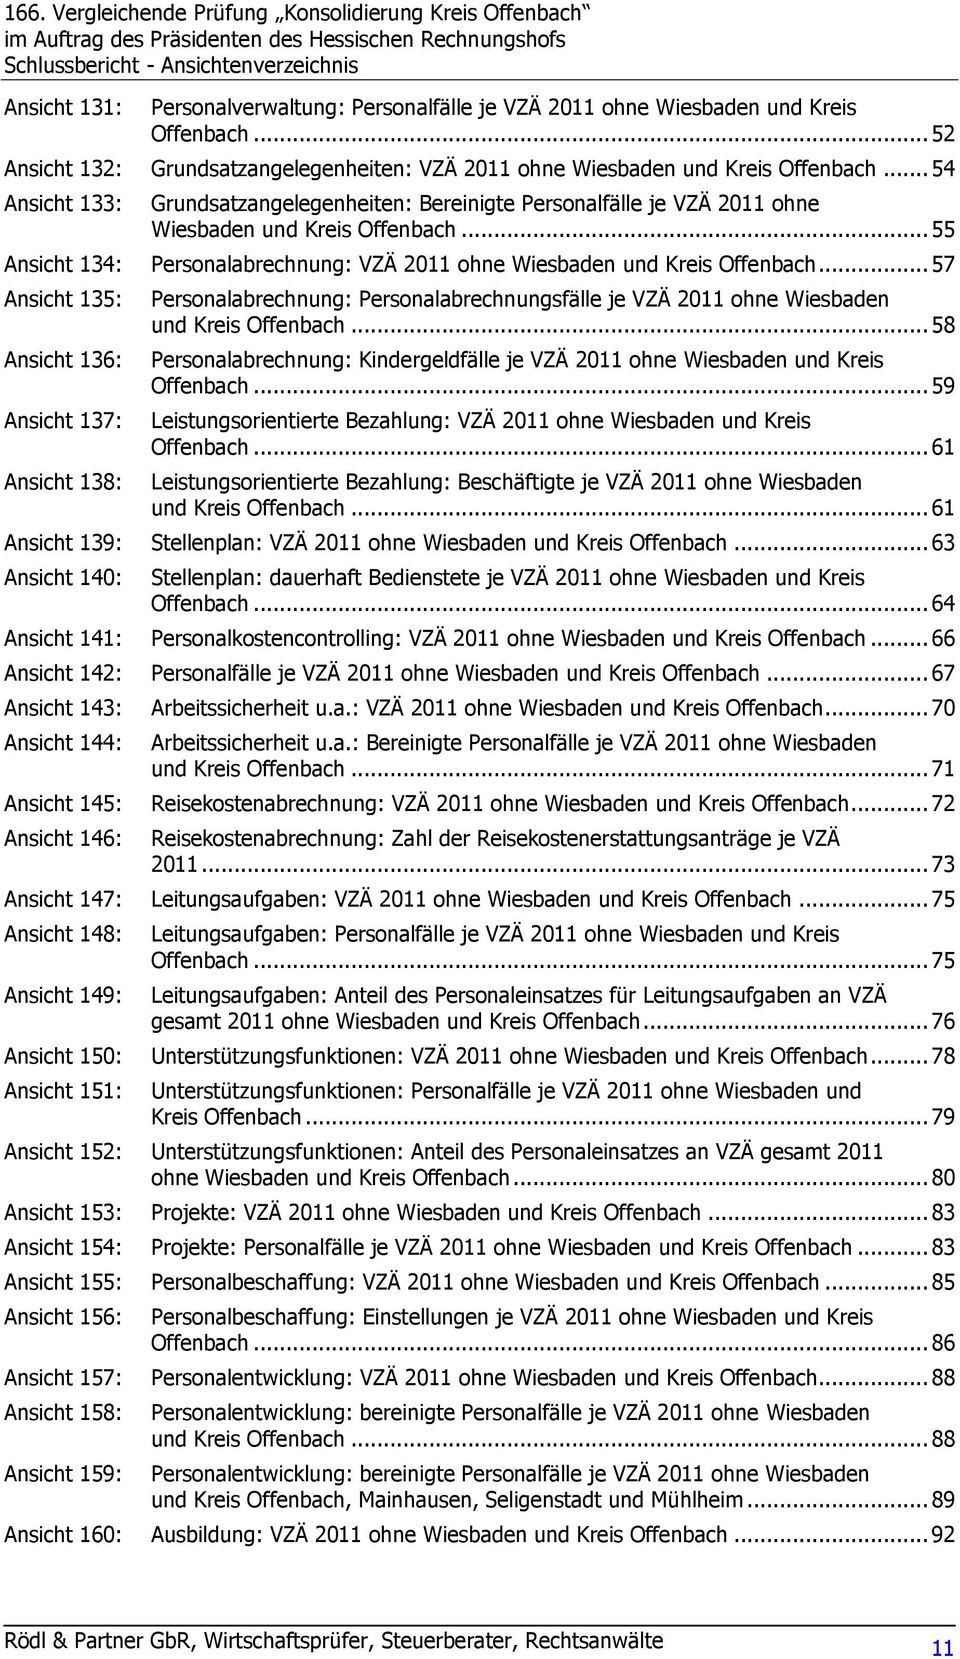 .. 54 Ansicht 133: Grundsatzangelegenheiten: Bereinigte Personalfälle je VZÄ 2011 ohne Wiesbaden und Kreis Offenbach... 55 Ansicht 134: Personalabrechnung: VZÄ 2011 ohne Wiesbaden und Kreis Offenbach.